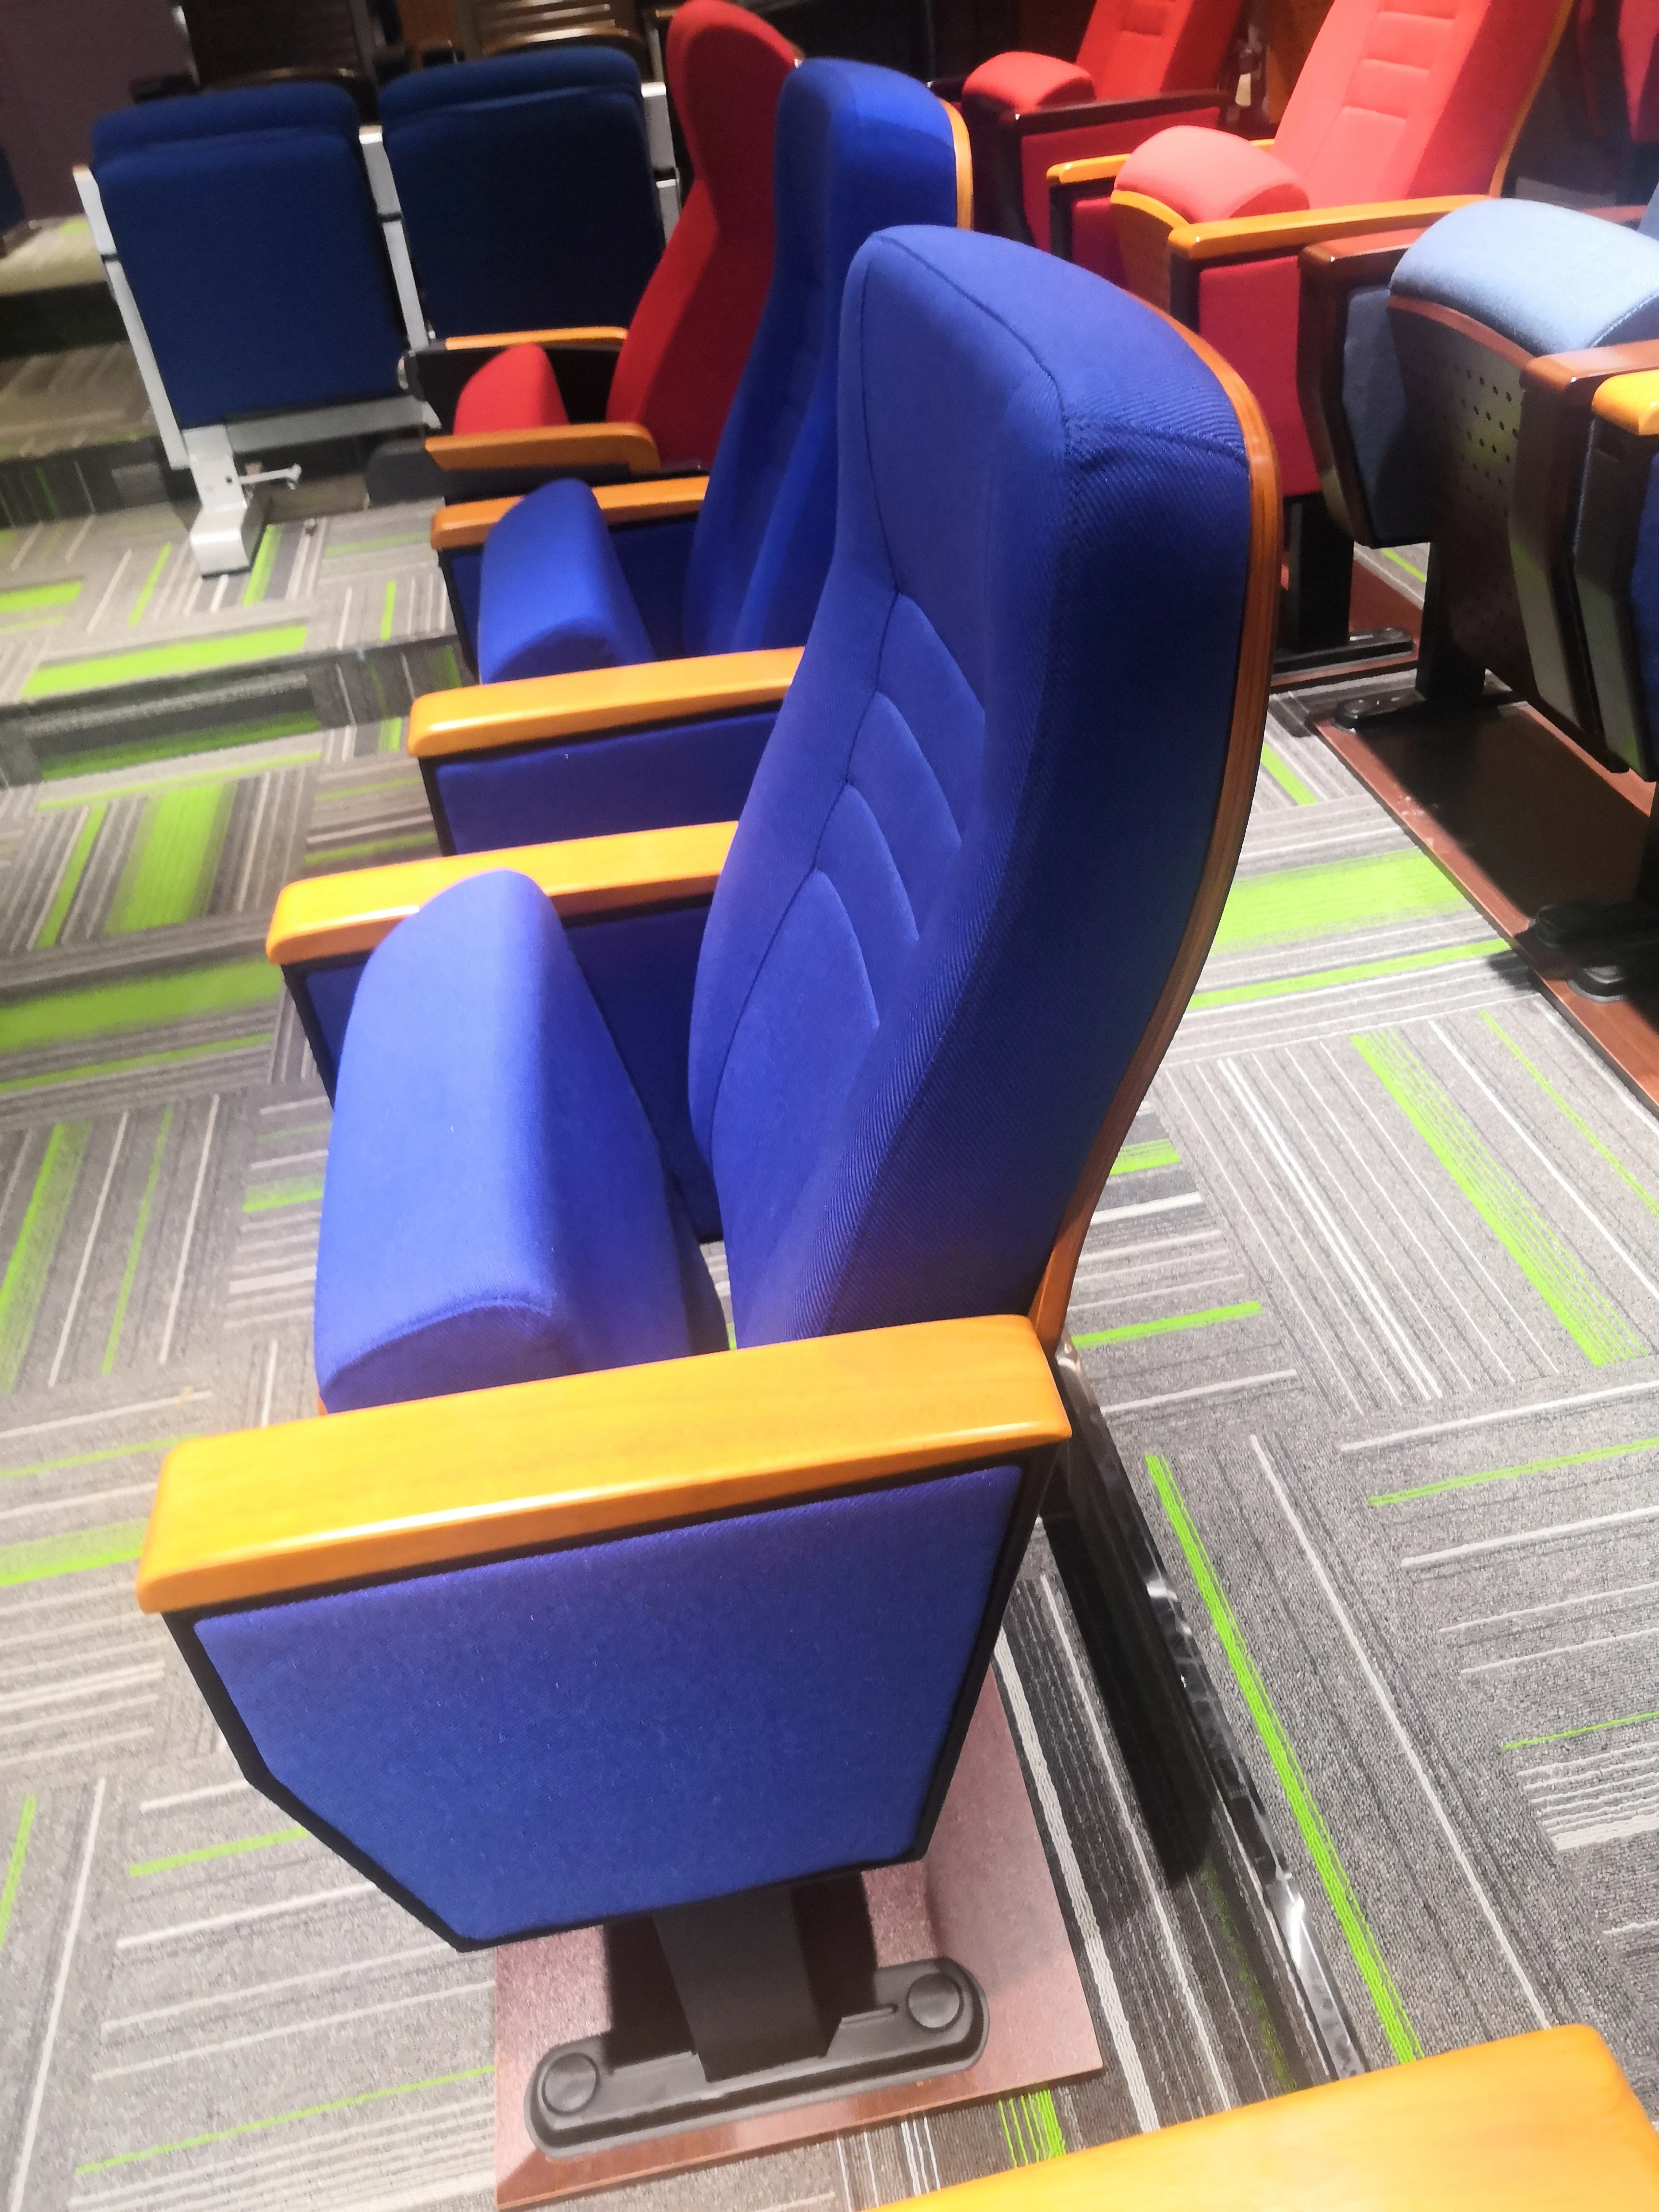 Металлическая подставка с тканевыми коммерческими кресла для кинотеатра могут сделать так, как вы требуете стулья для конференц-зала, церкви стулья мягкие стулья для класса